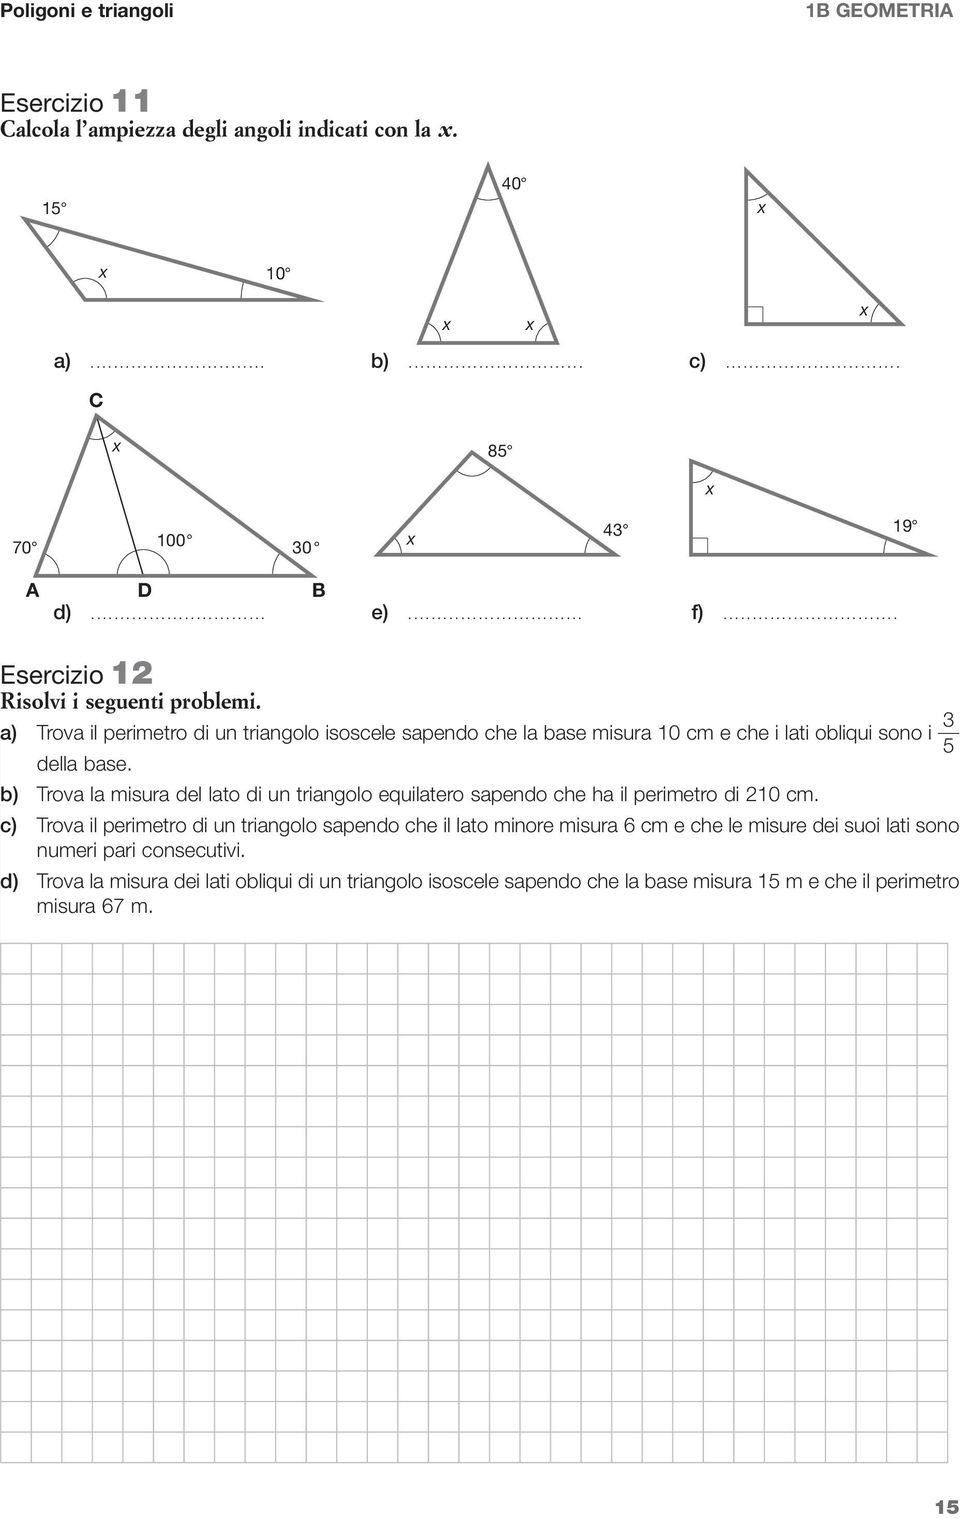 b) Trova la misura del lato di un triangolo equilatero sapendo che ha il perimetro di 210 cm.